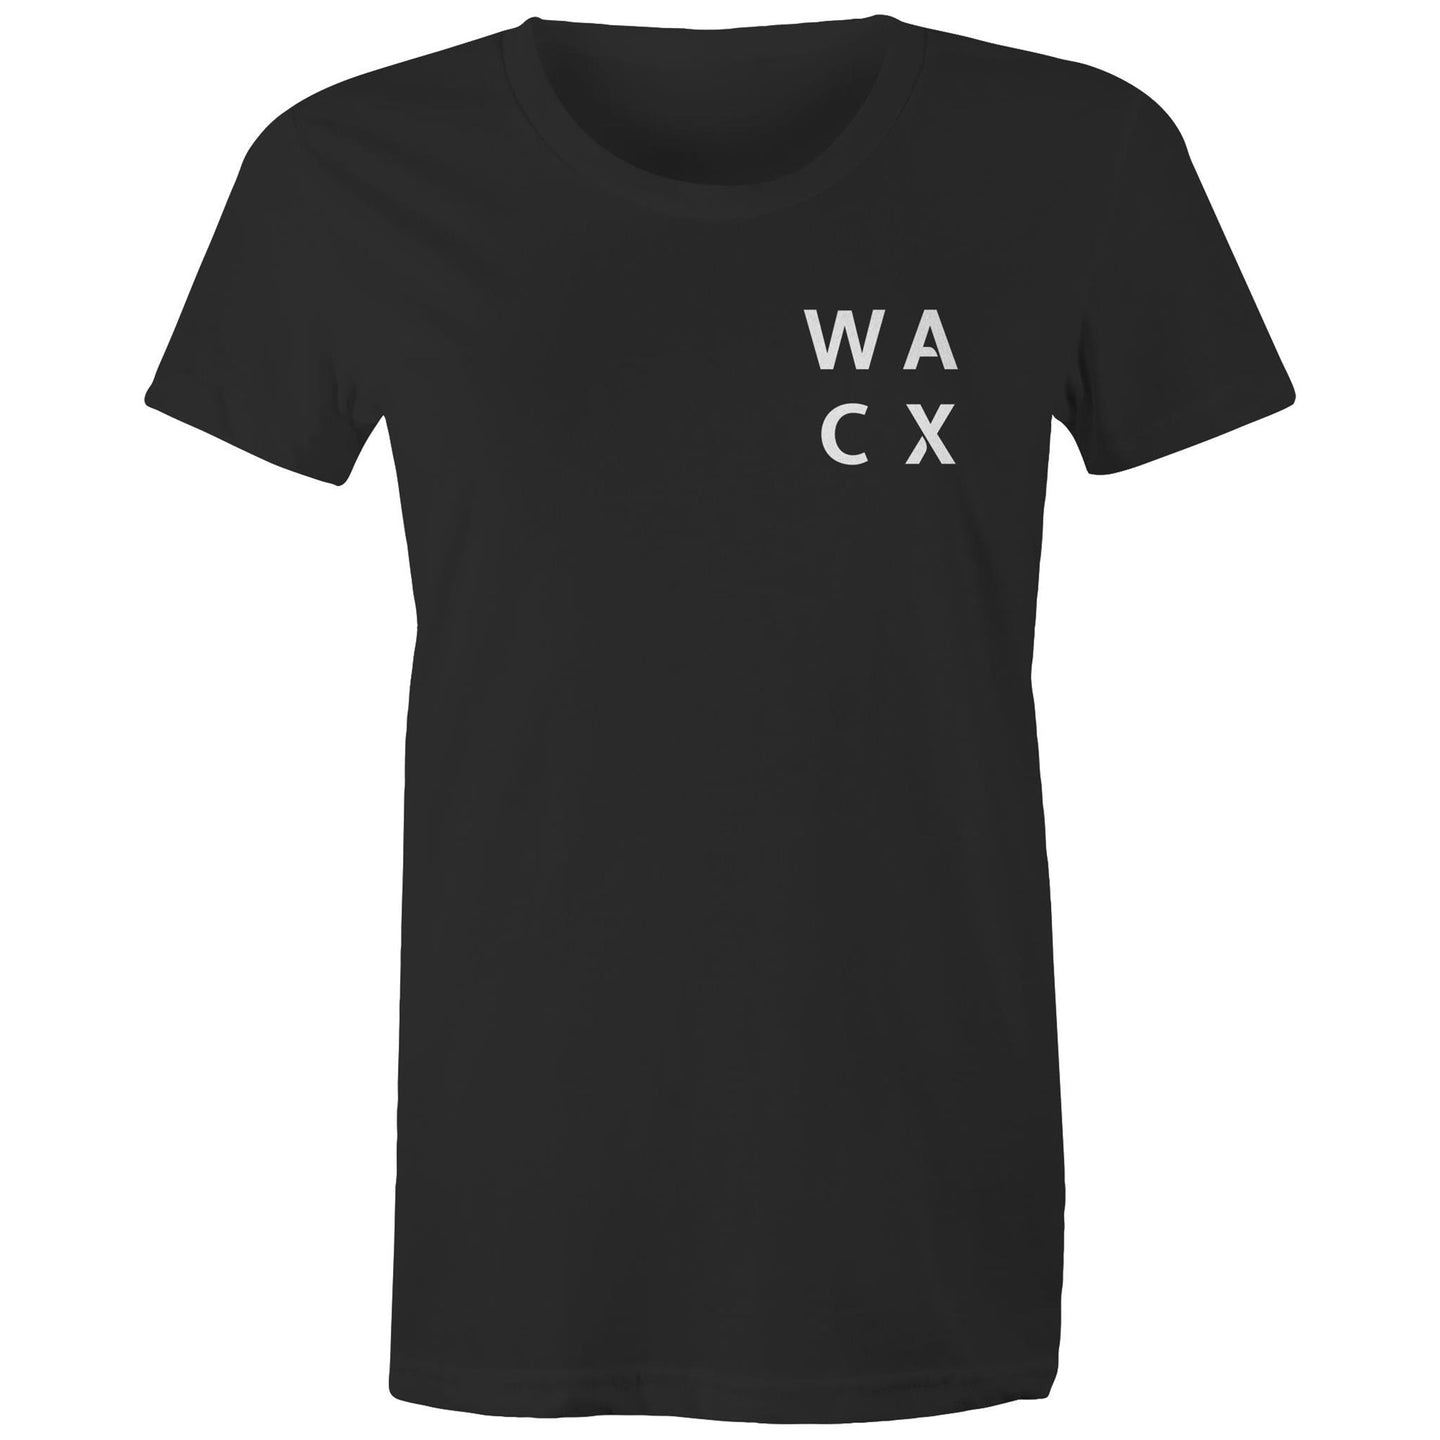 WACX Women's T-Shirt - Black